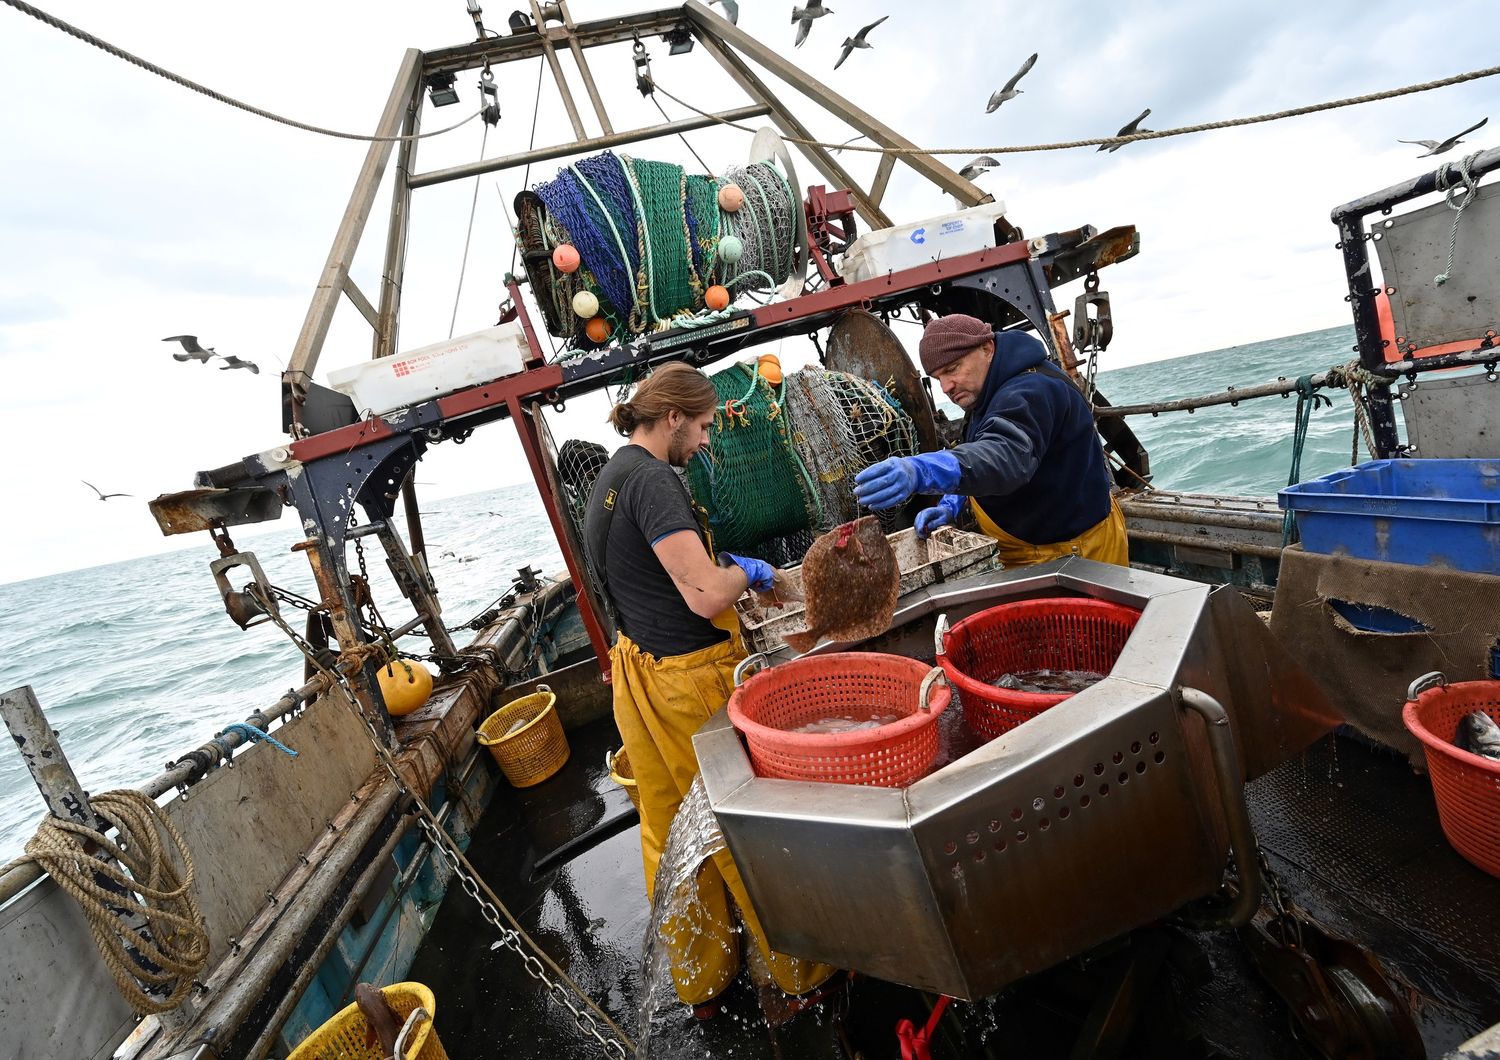 Pescatori bretoni